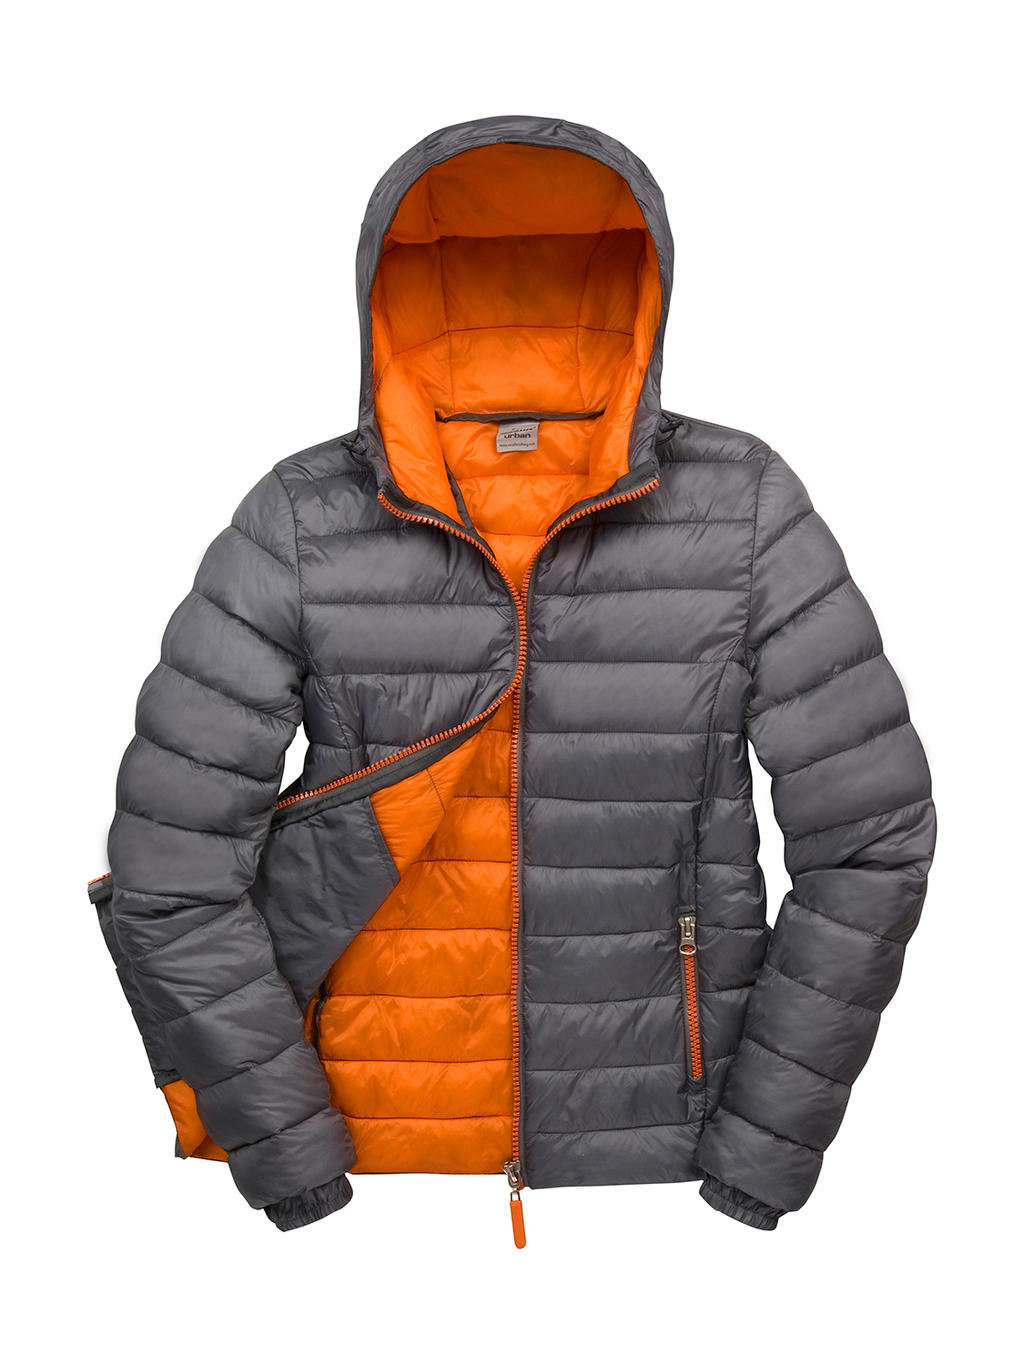  Ladies Snow Bird Hooded Jacket in Farbe Grey/Orange